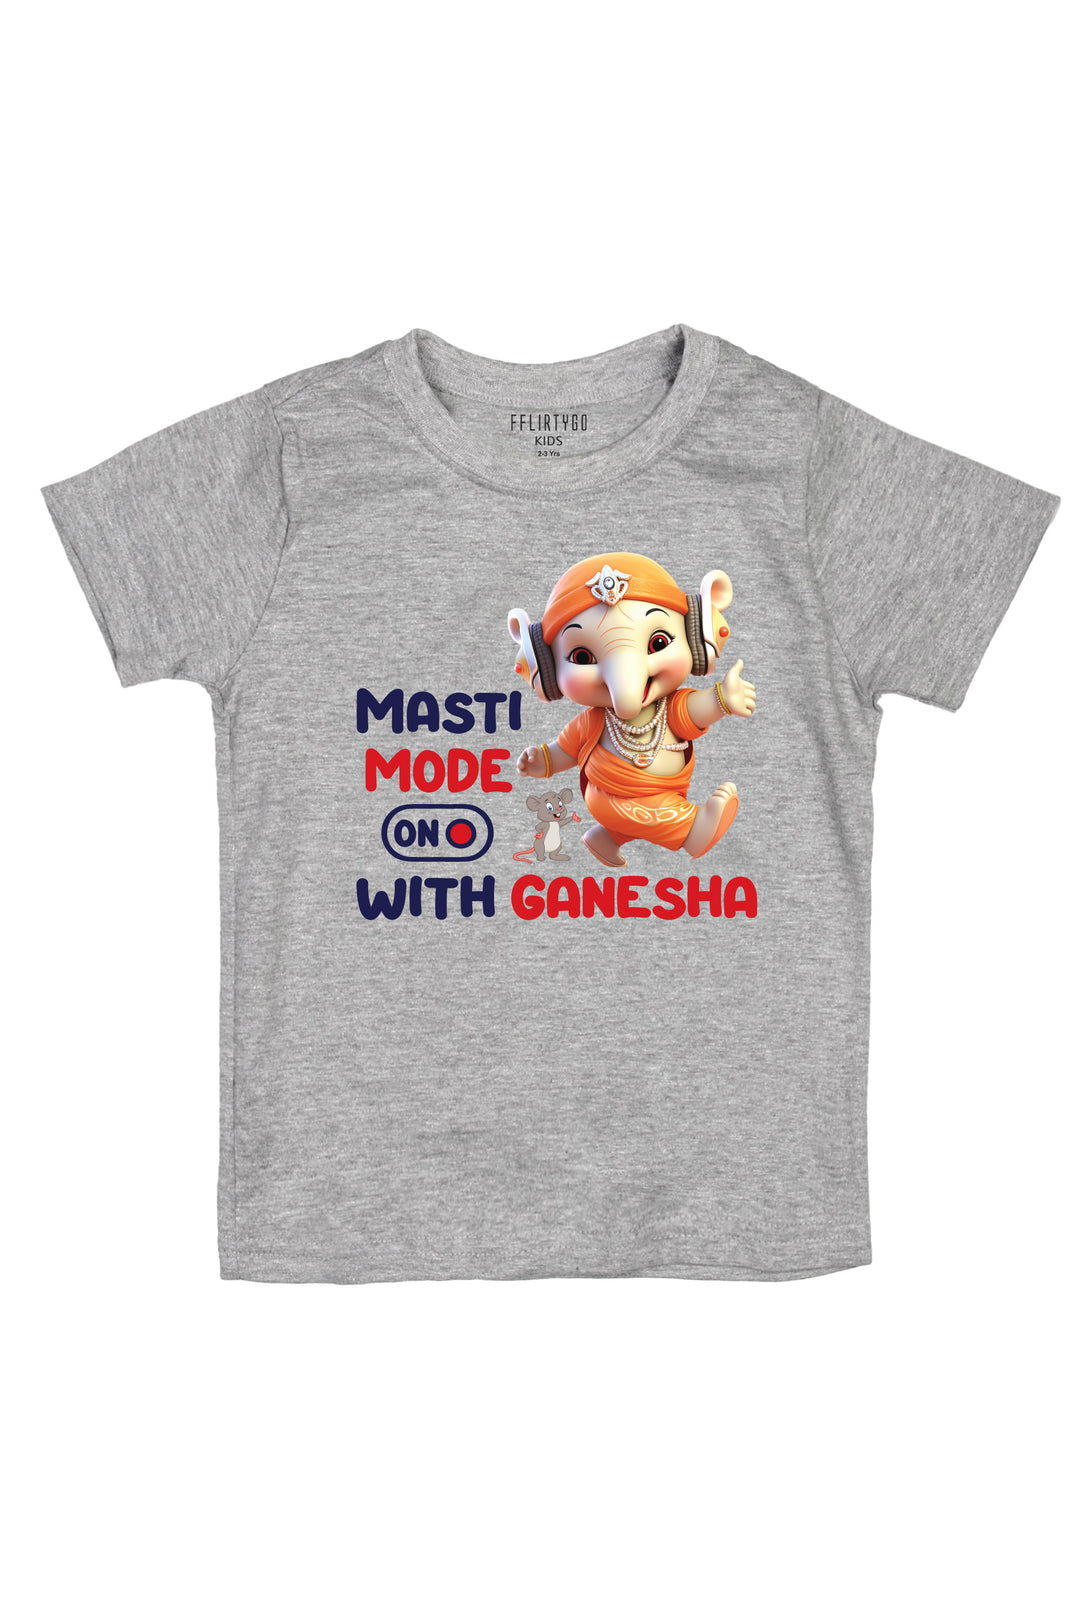 Masti Mode On With Ganesha Kids T Shirt